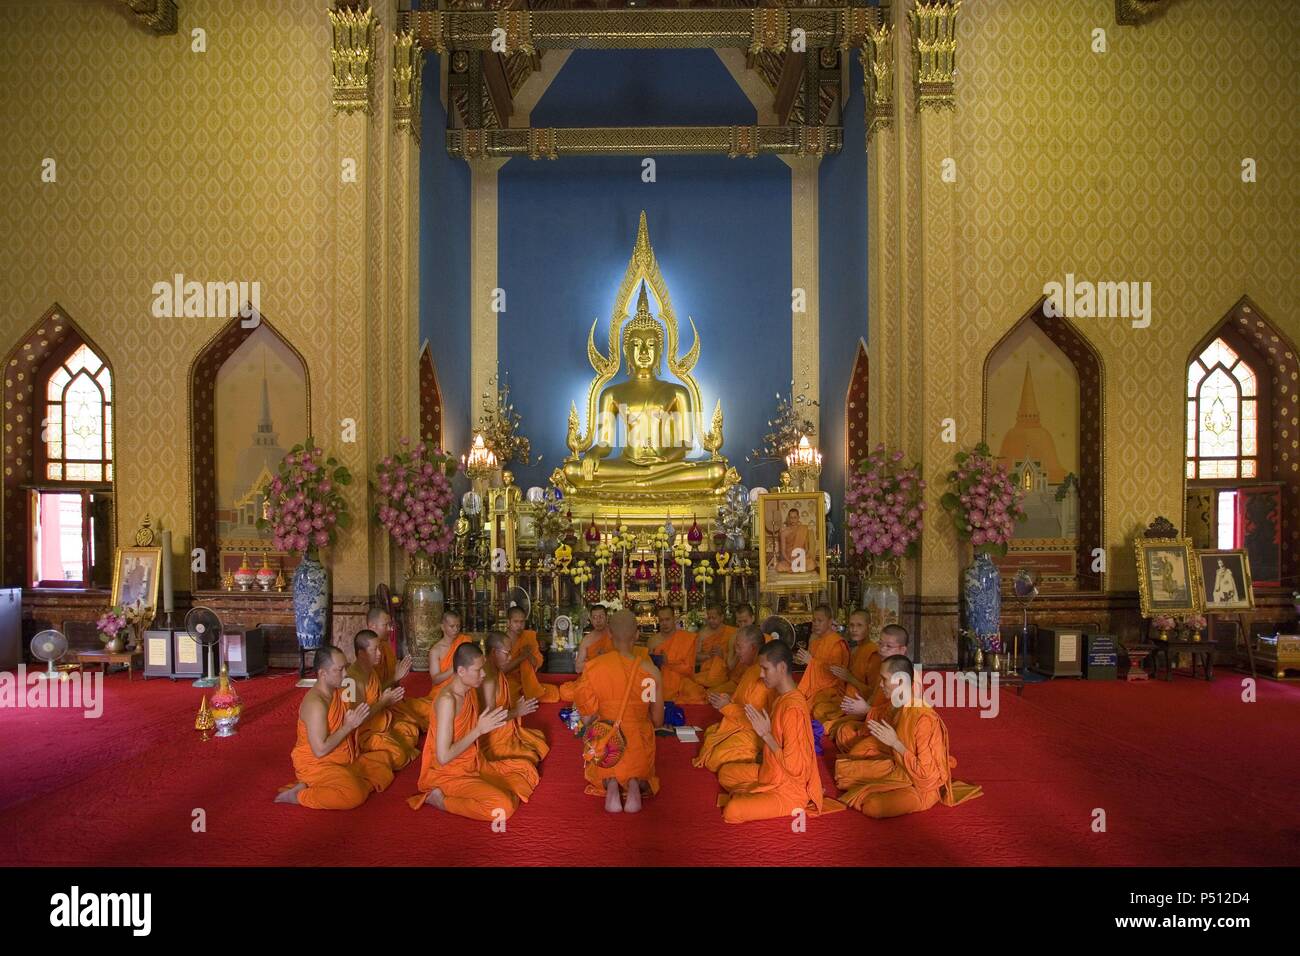 MONJES BUDISTAS rezando en el interior del TEMPLO WAT BENCHAMABOPHIT, construido a finales del siglo XIX por orden de Rama V (Chulalongkorn el Grande) con mármol de Carrara. Popularmente conocido como TEMPLO DE MARMOL. BANGKOK. Tailandia. Stock Photo